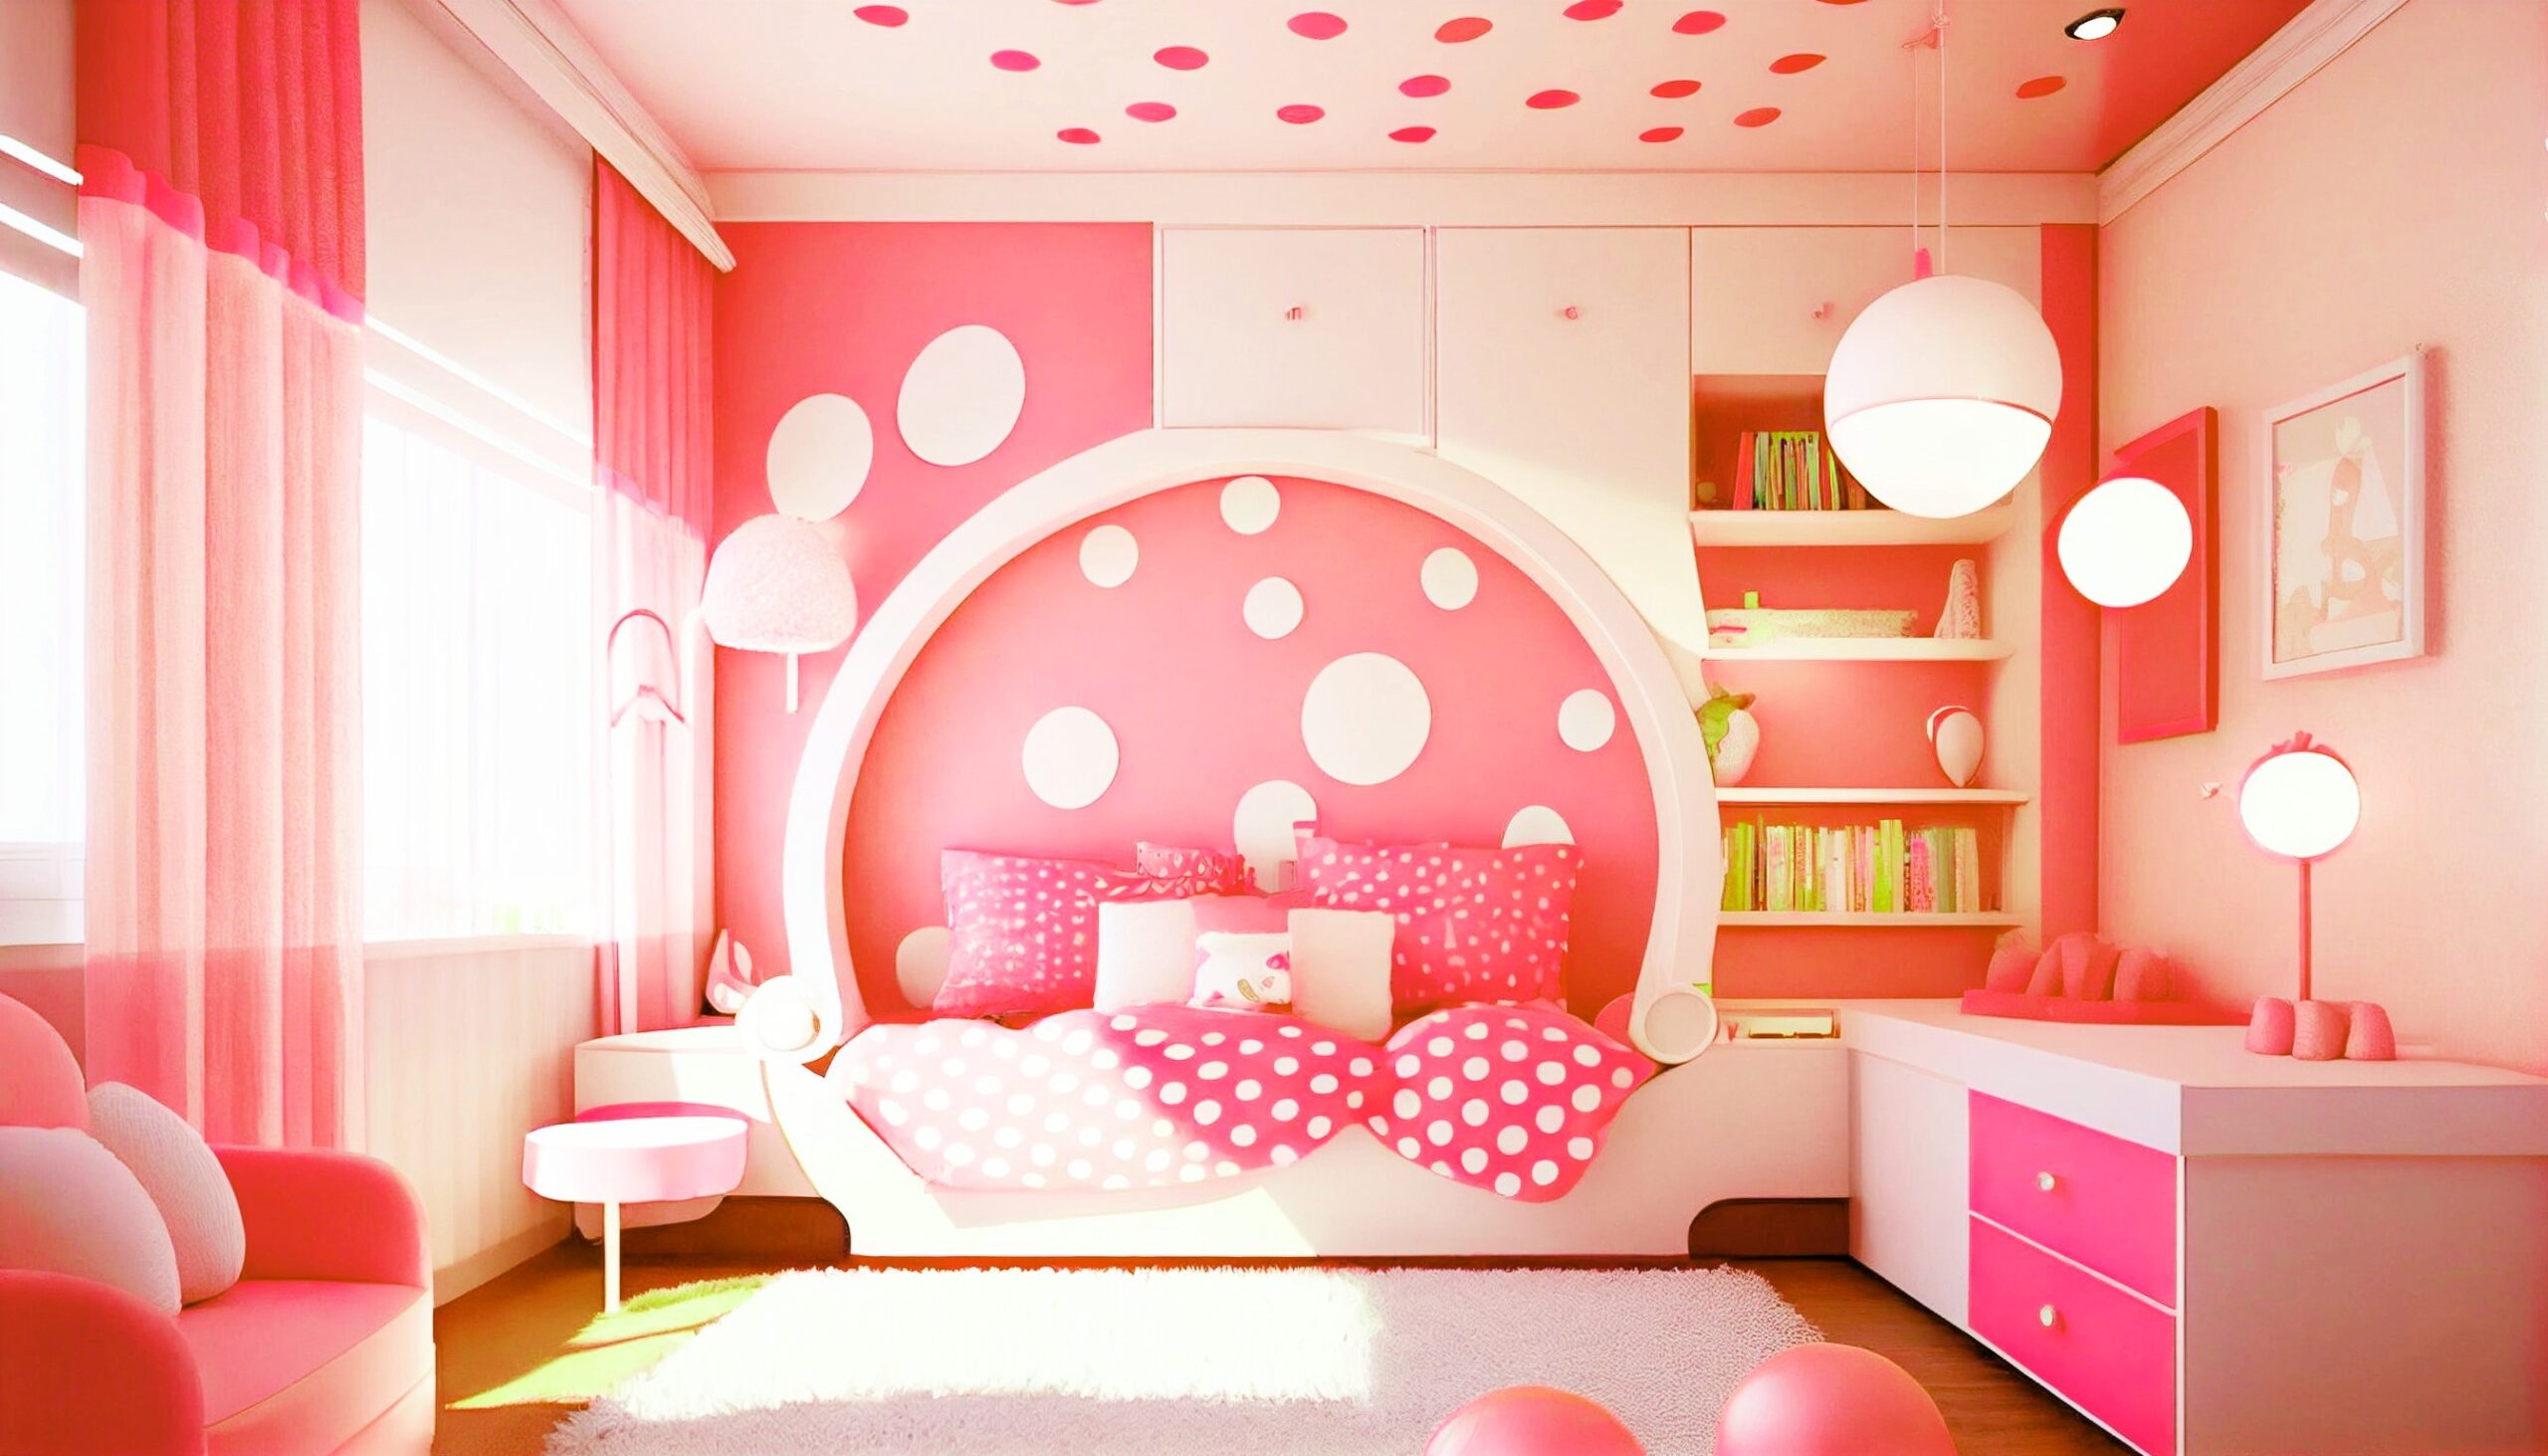 <img src="pink.jpg" alt="pink polka dot bedroom decor"/>